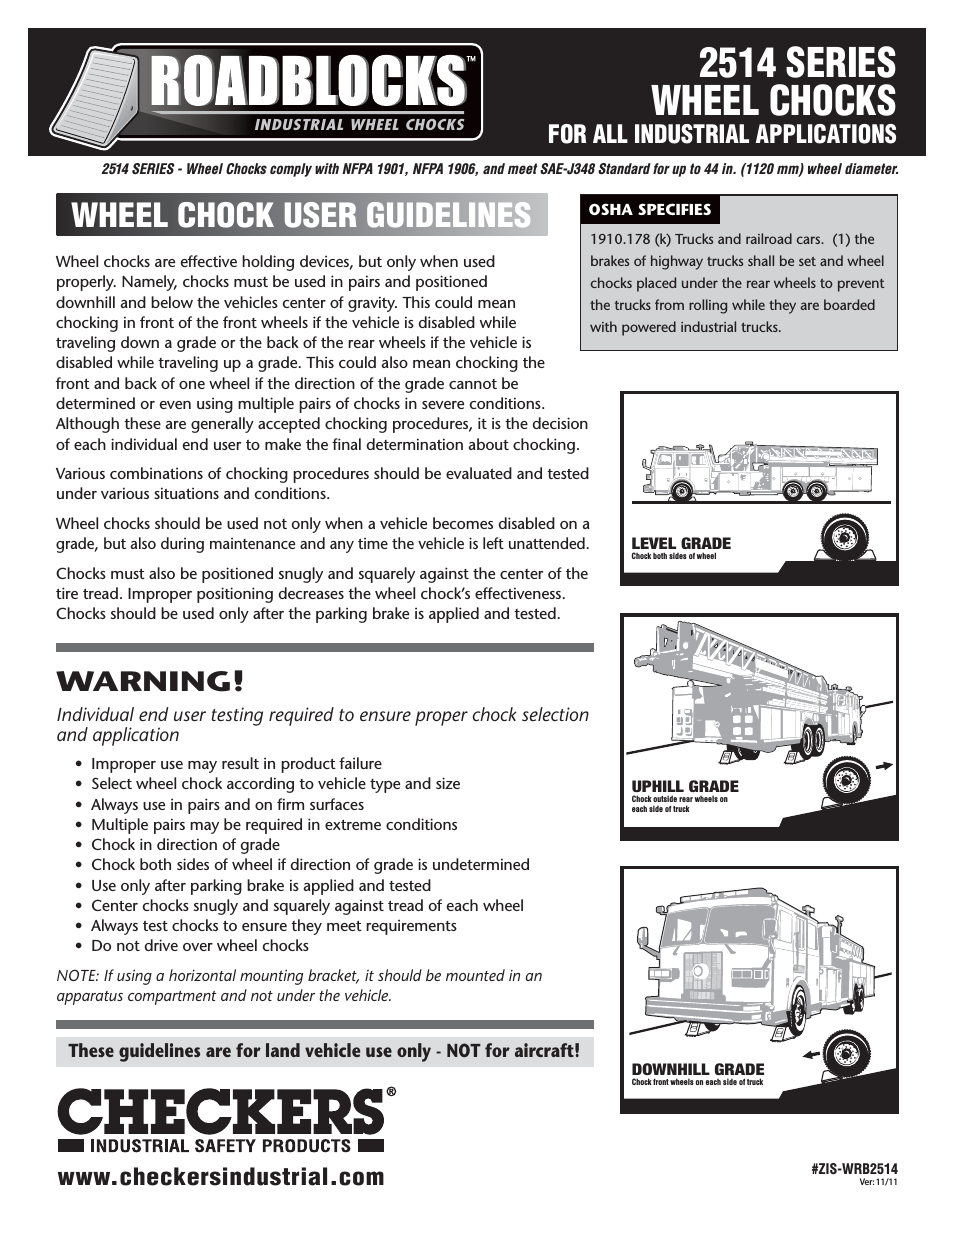 Roadblocks 2514 Wheel Chocks User Guidelines